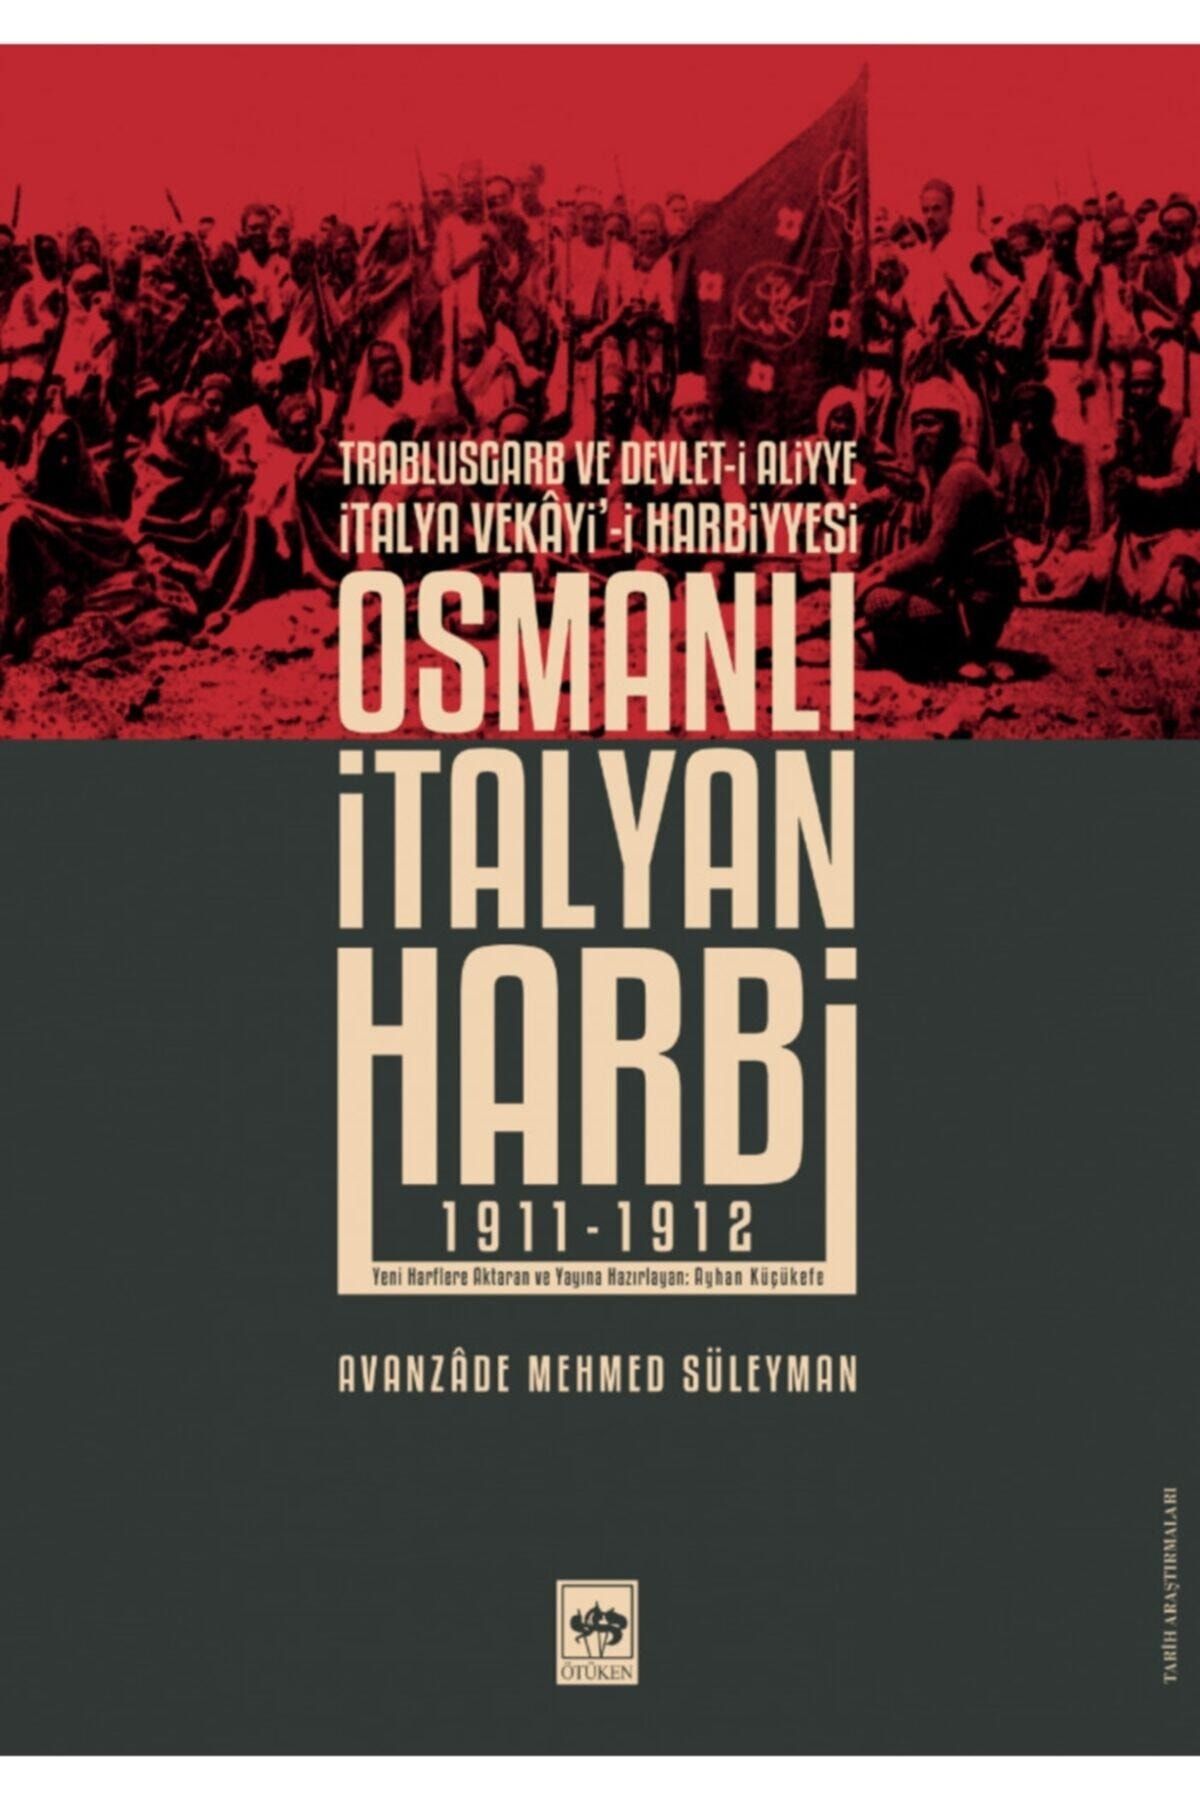 Ötüken Neşriyat Osmanlı Italyan Harbi / Avanzâde Mehmed Süleyman